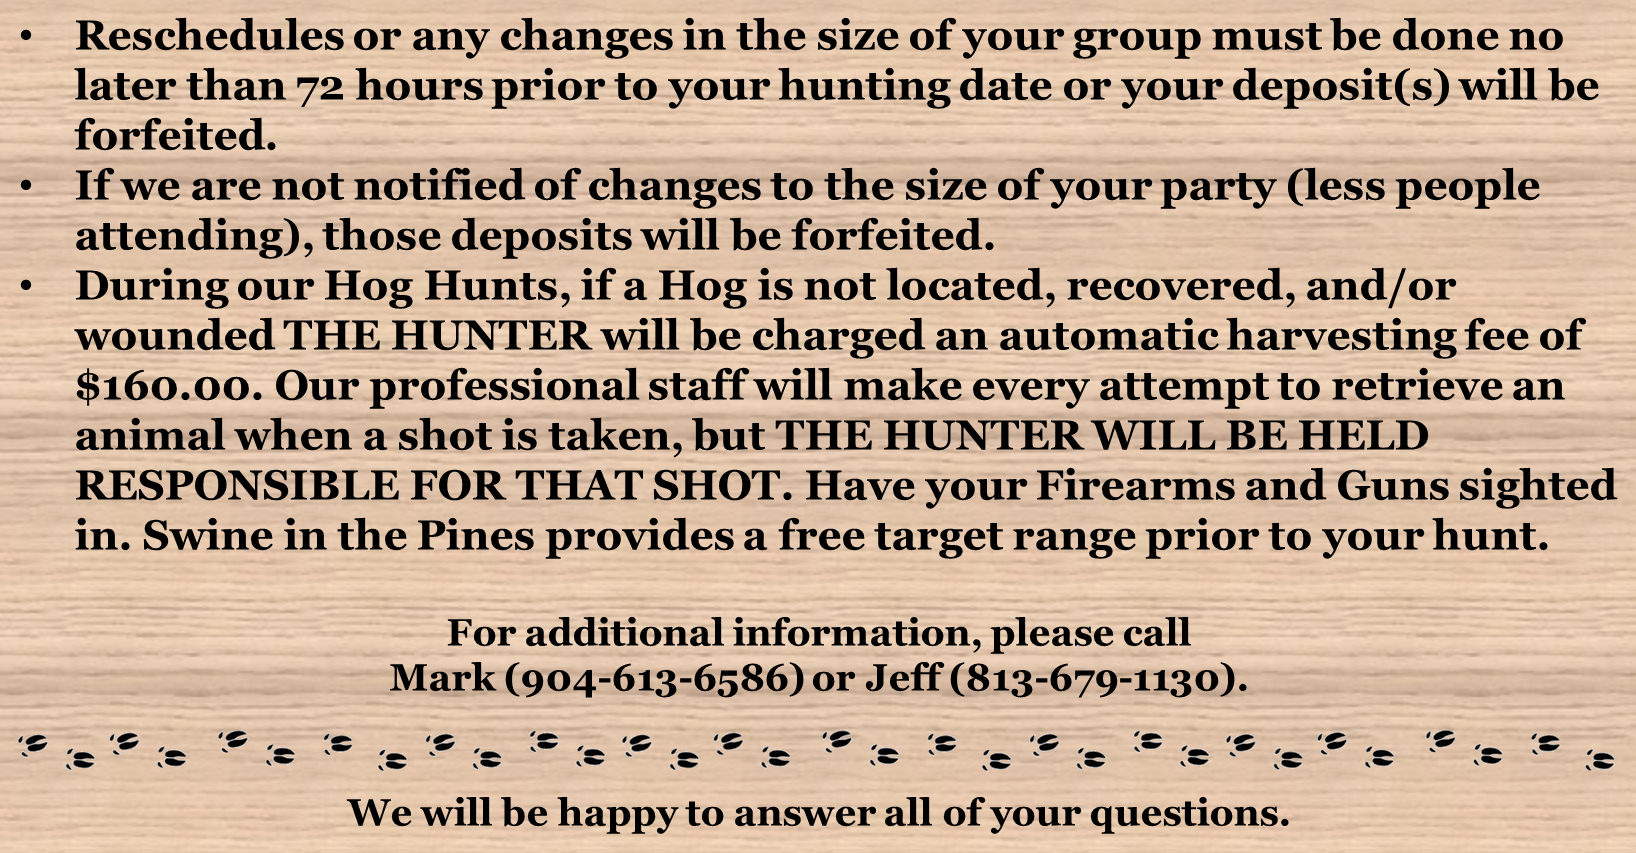 Reschedule Hunt - Swine In The Pines